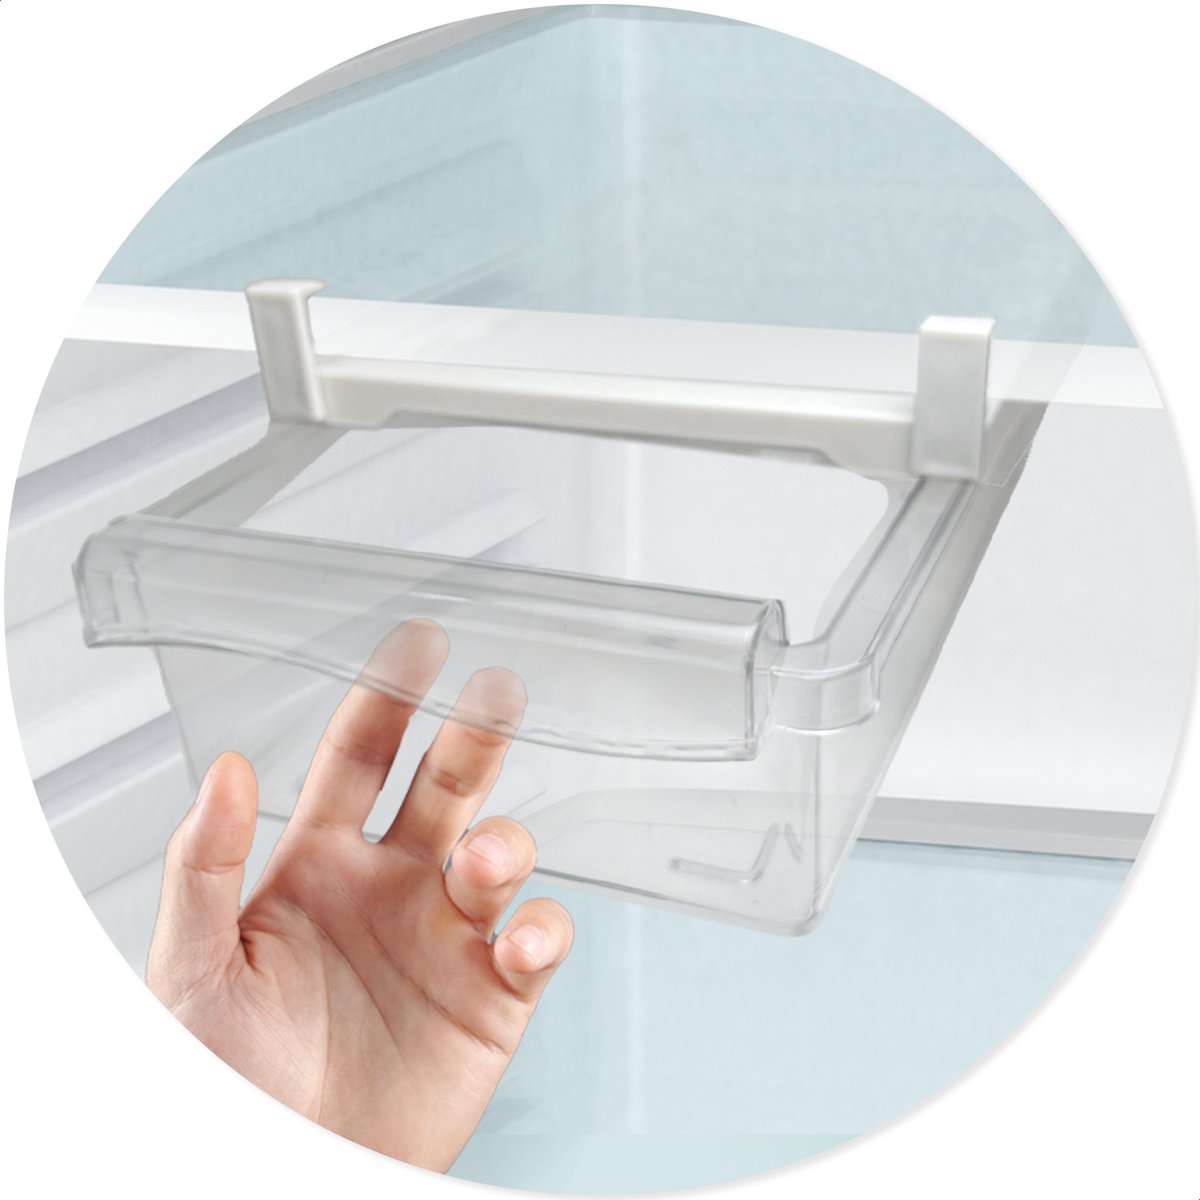 Box me - Koelkast organizer - extra lade in koelkast - transparant hangende koelkast la - extra opbergruimte in de koelkast